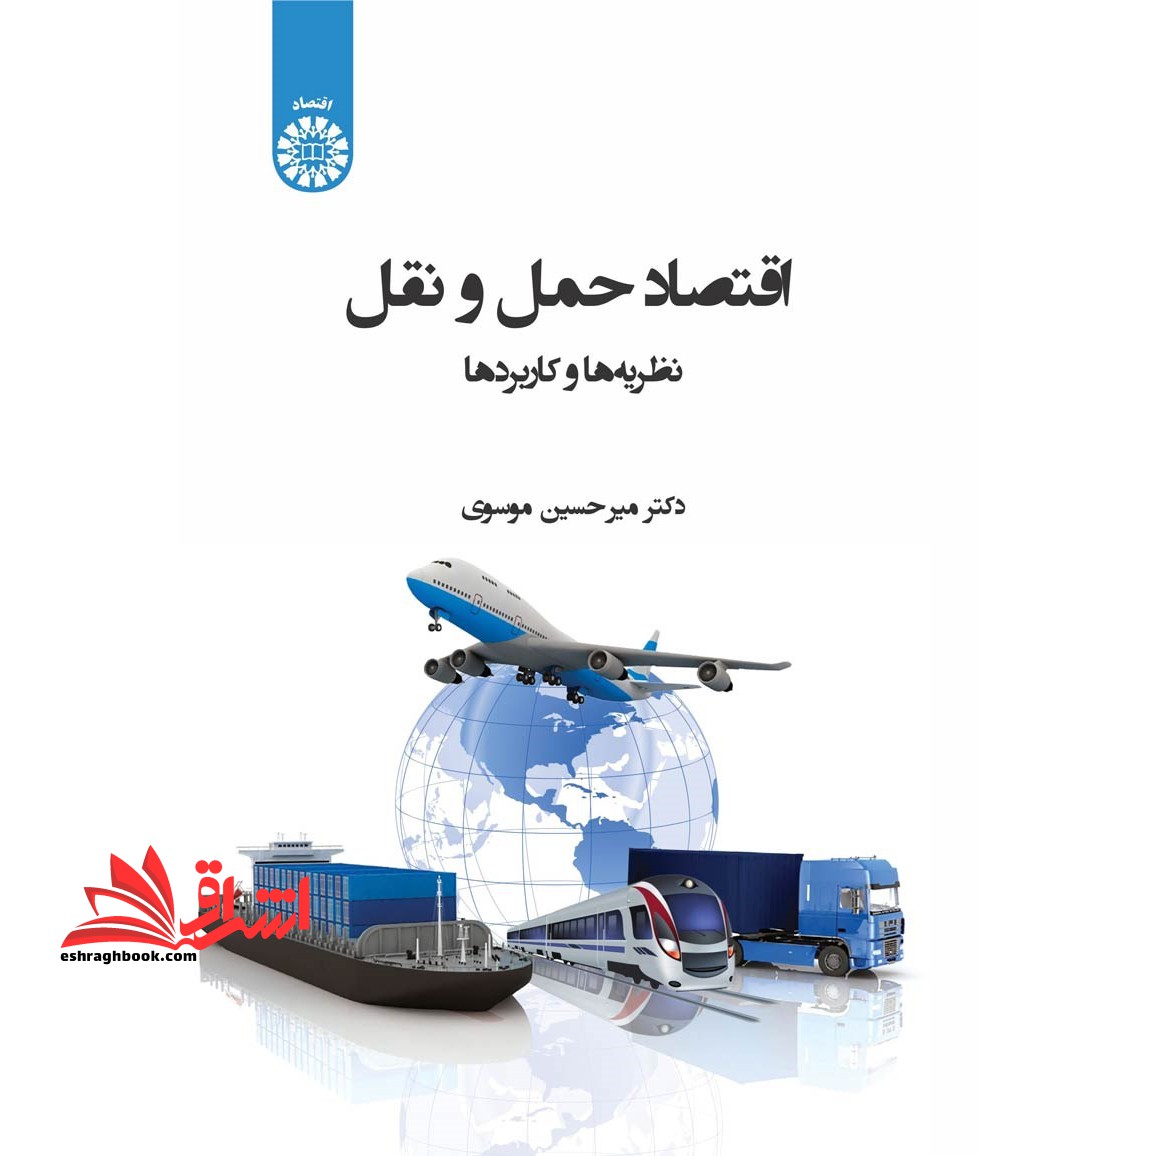 اقتصاد حمل و نقل:نظریه ها و کاربردها (۲۴۰۱)